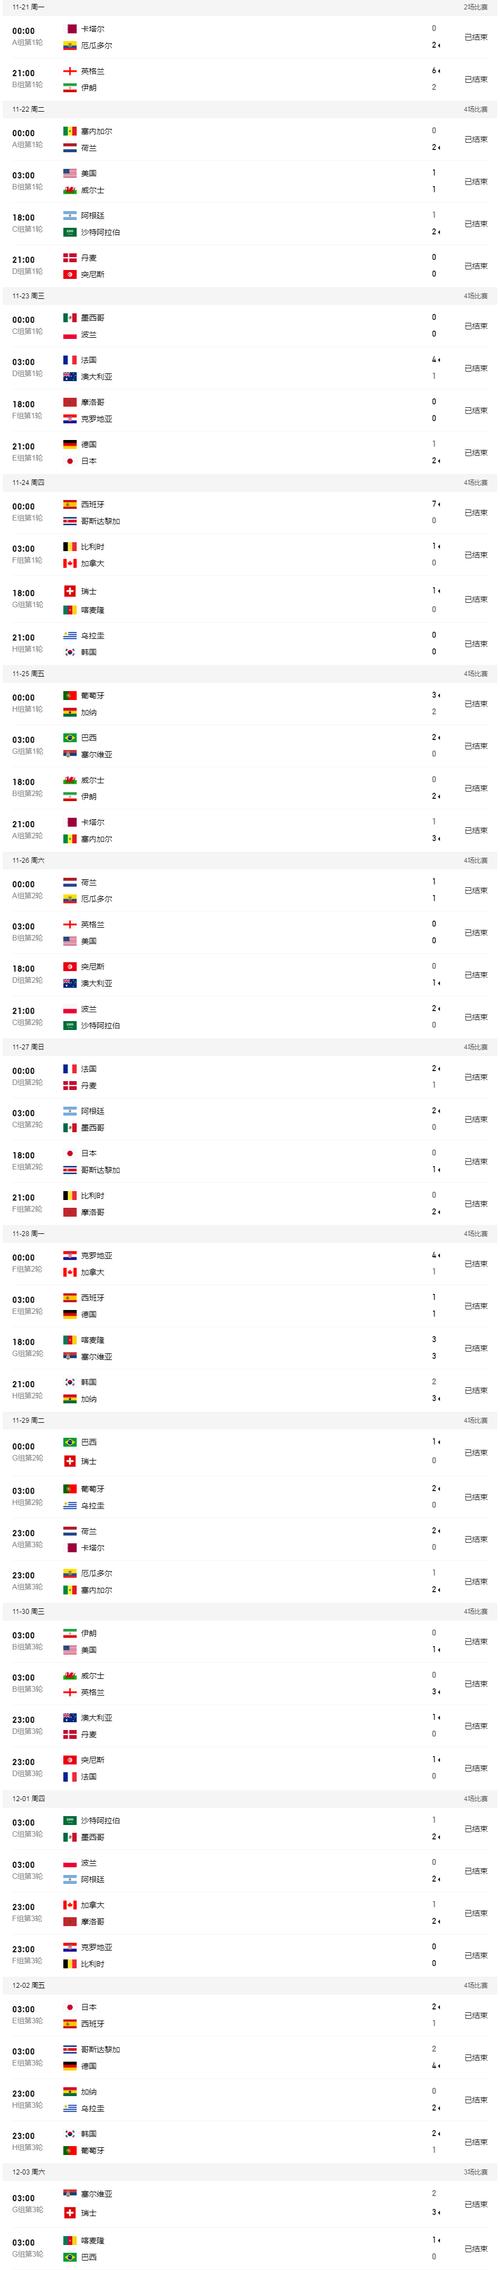 历届世界杯决赛比分记录